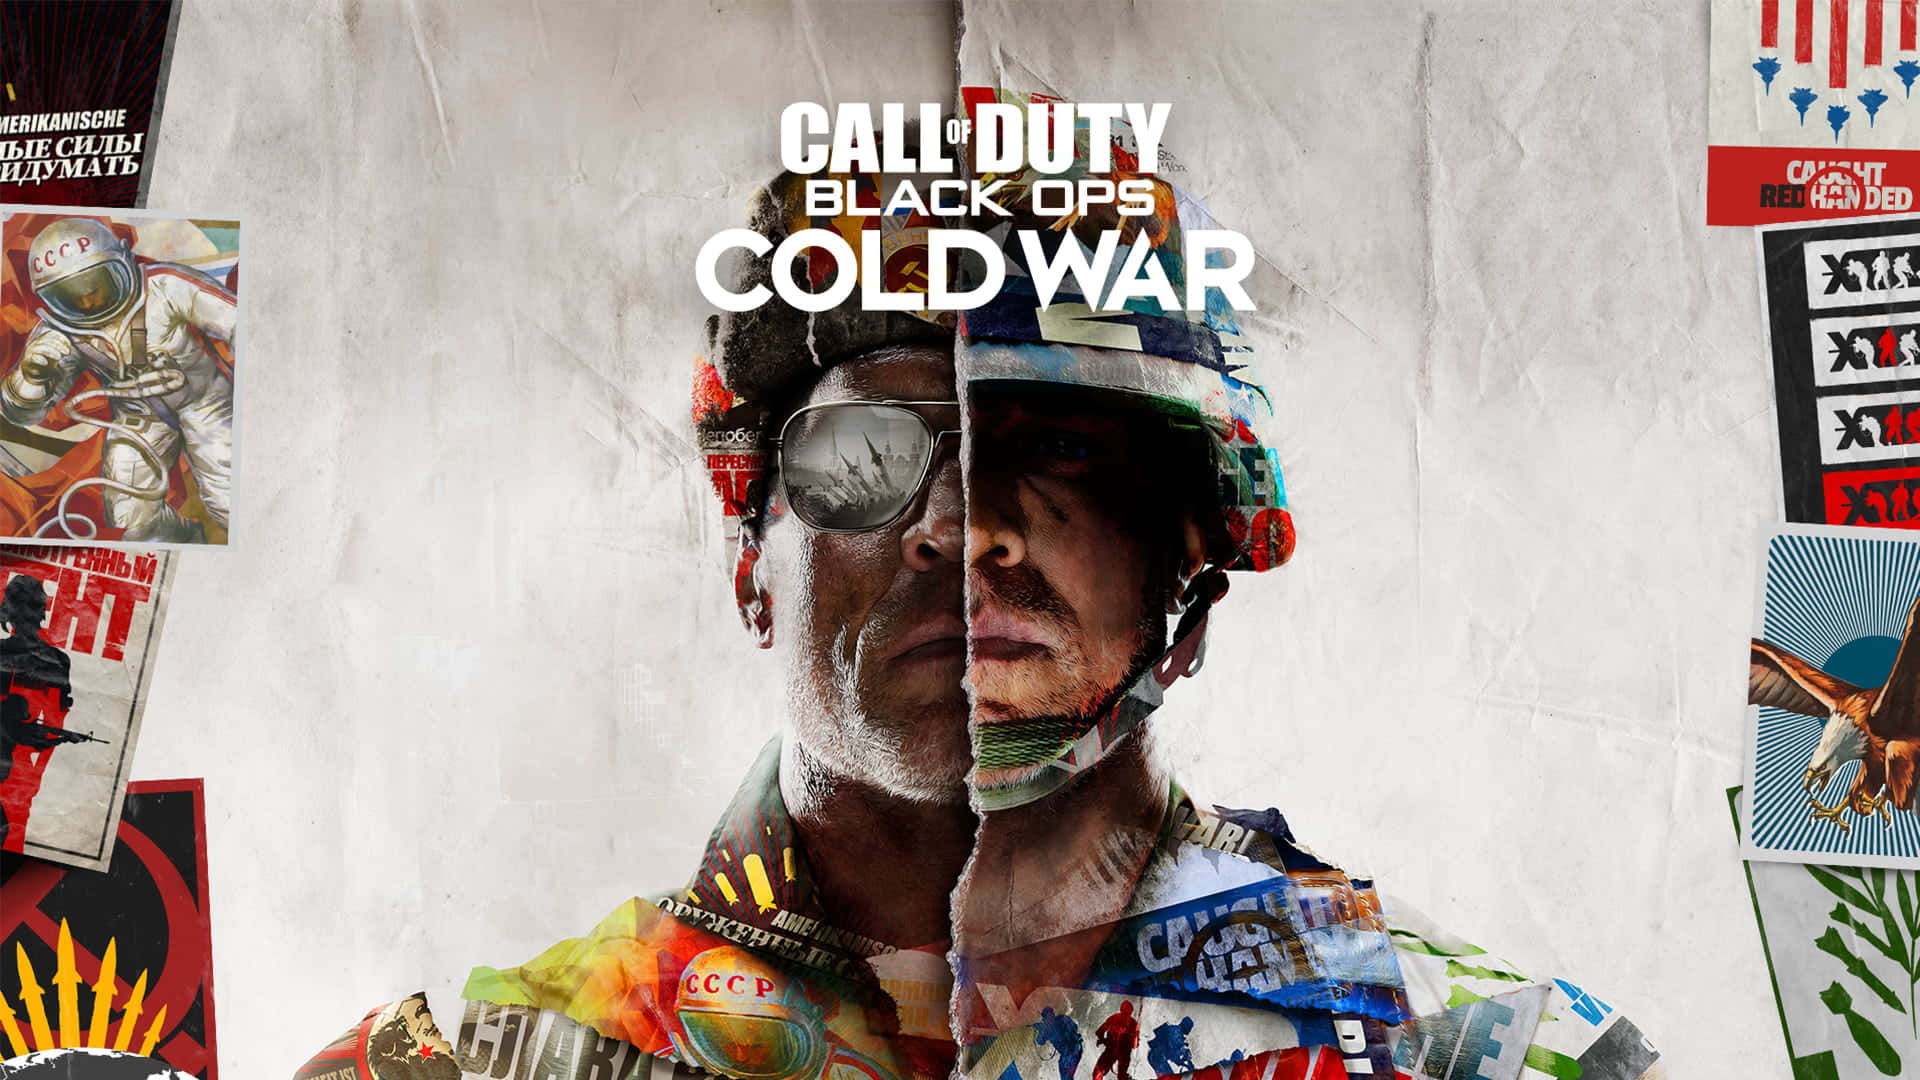 Hochauflösendeskey-art-hintergrundbild Für Call Of Duty Black Ops Cold War